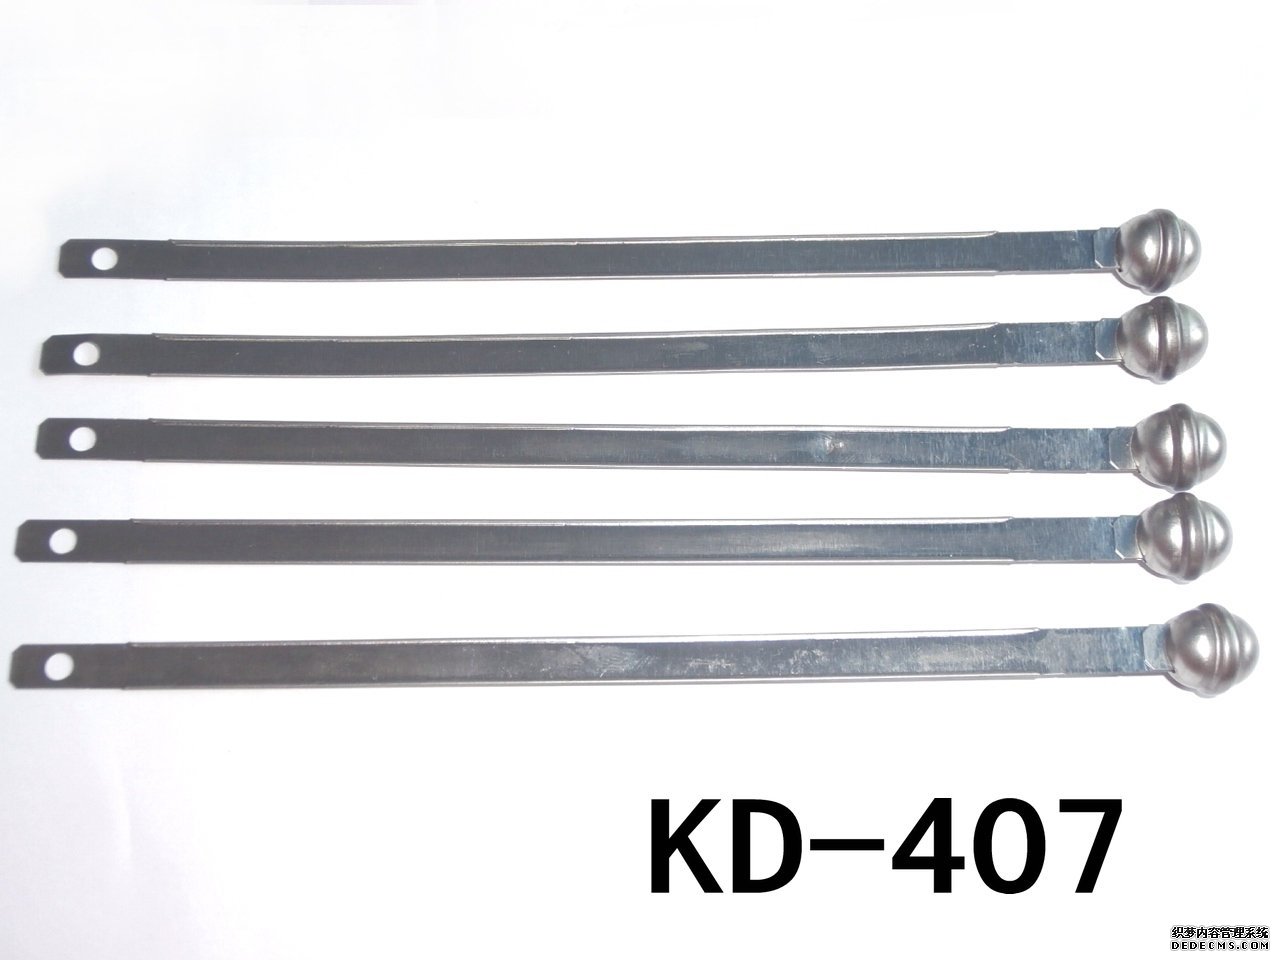 KD-407